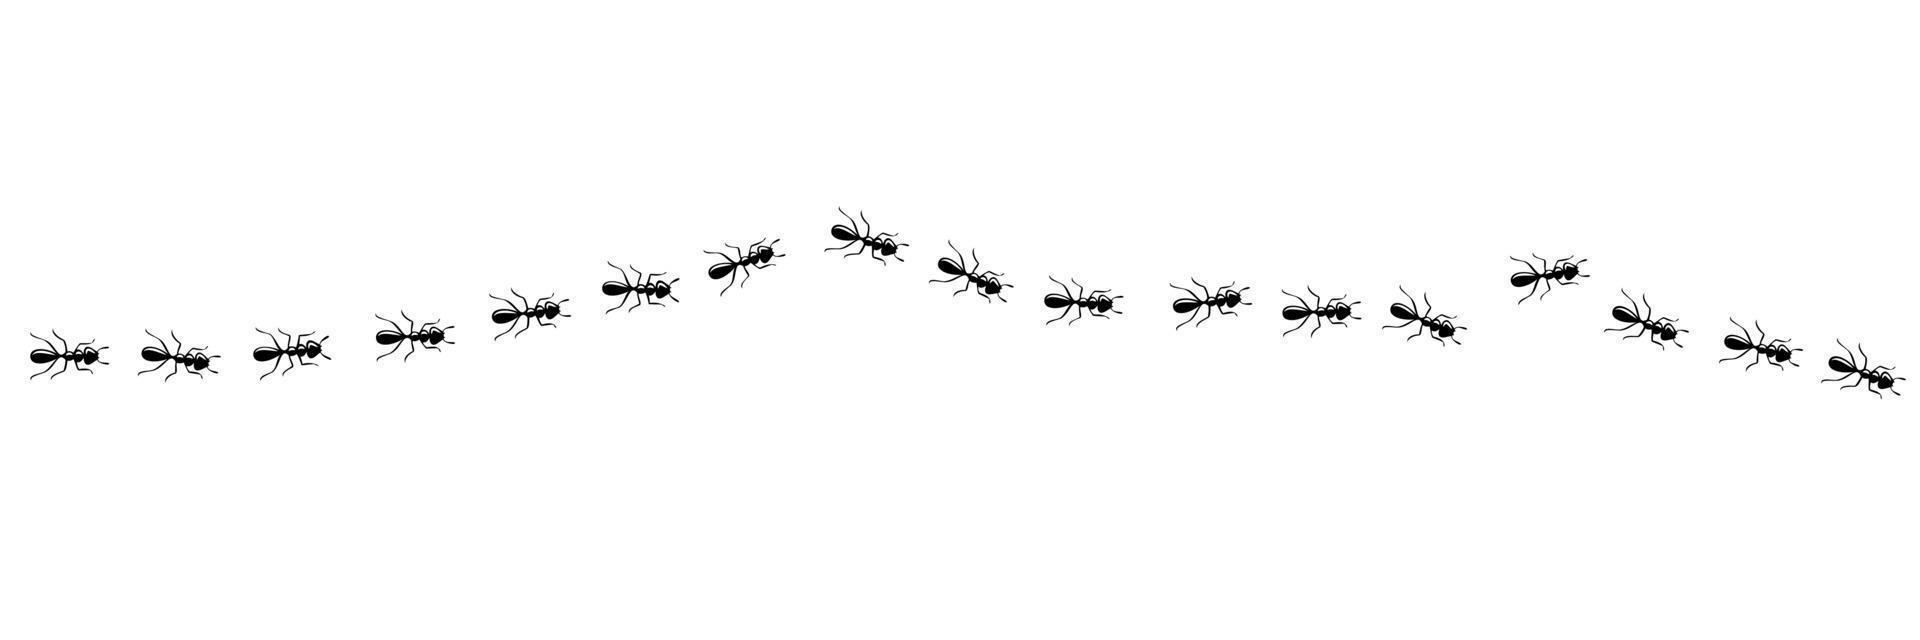 formigas marchando na trilha. caminho de formiga isolado no fundo branco. ilustração vetorial vetor